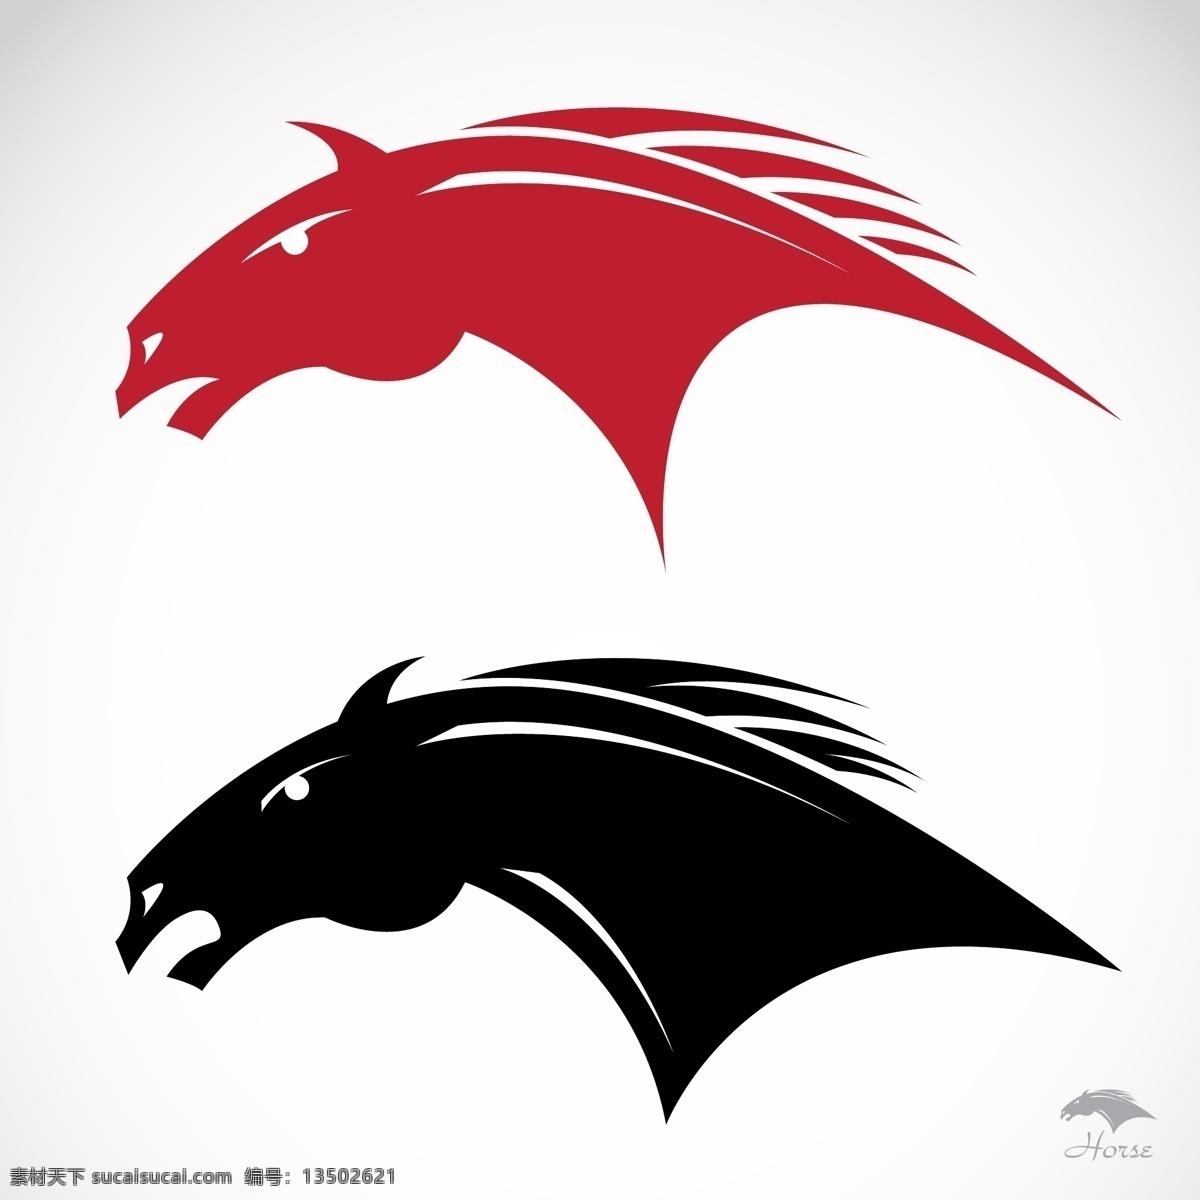 时尚 马 标志 矢量 标志设计 马标志 动物图形标志 动物 logo 图形 商标设计 企业 公